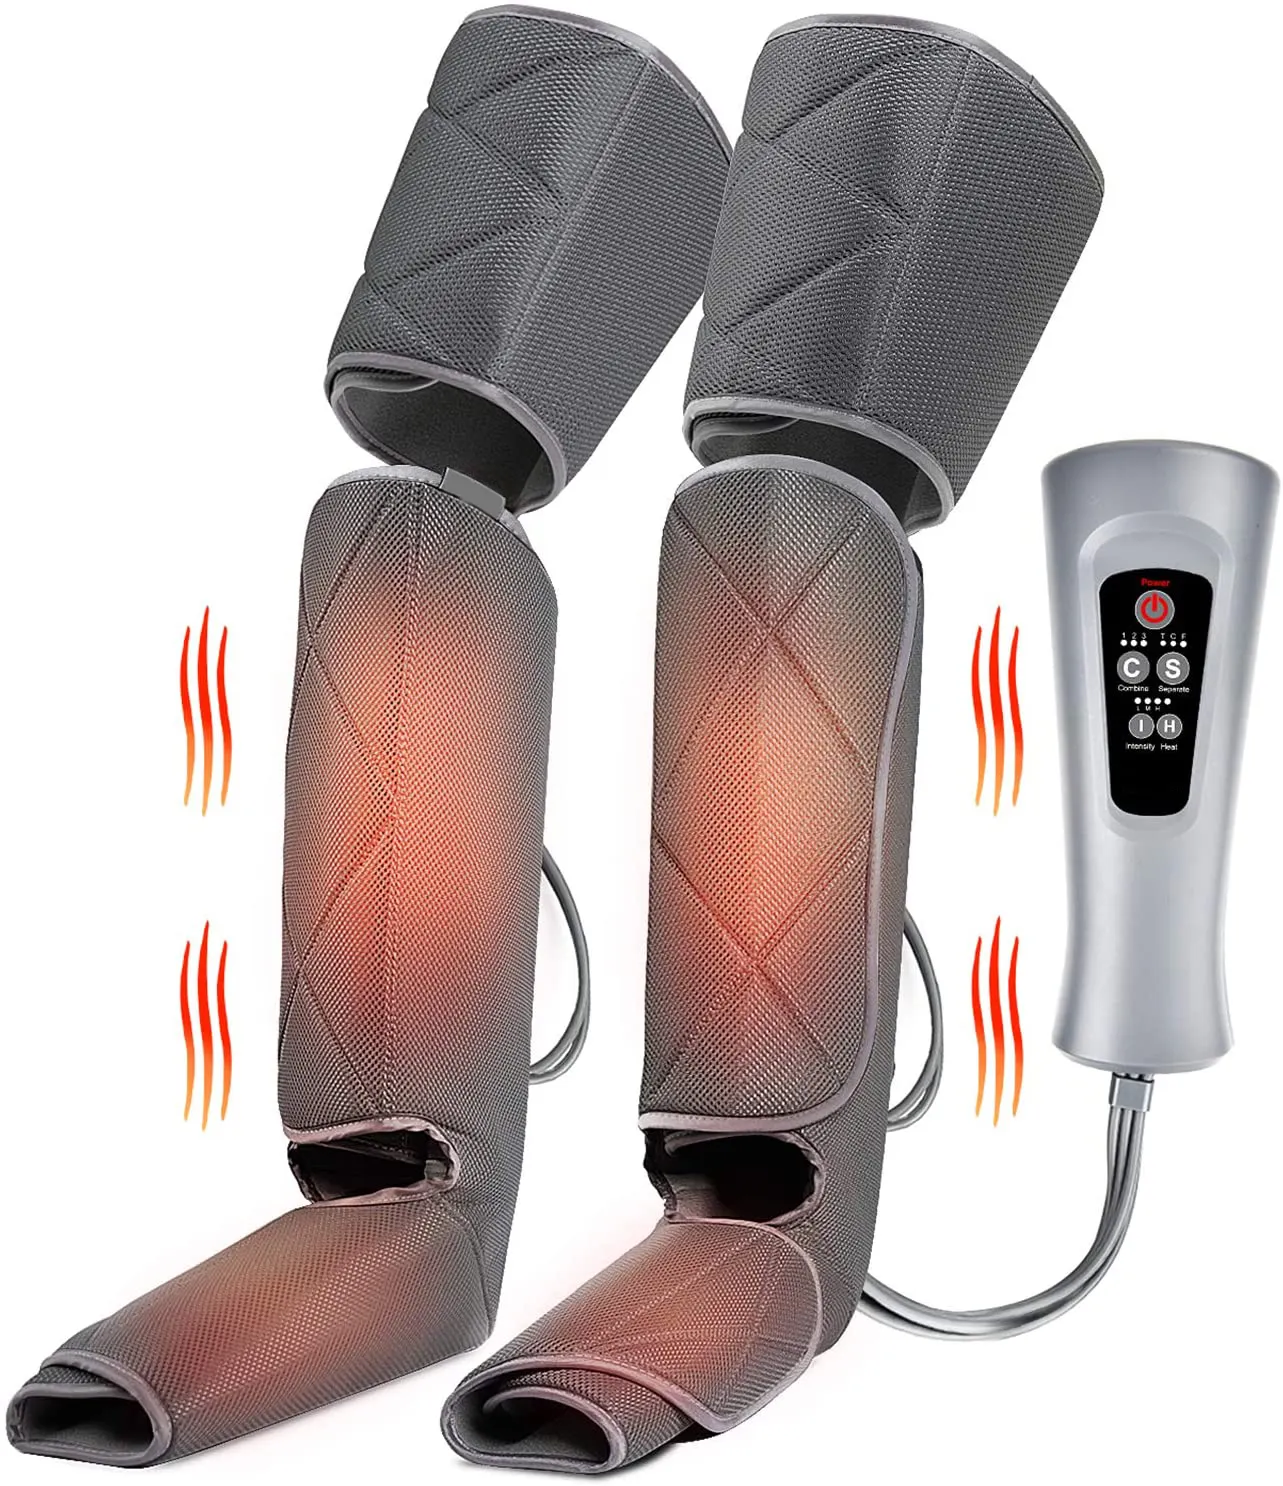 Luyao massageador elétrico inteligente, vibrador de joelho, compressão de ar, pernas e pés, massagem nos pés